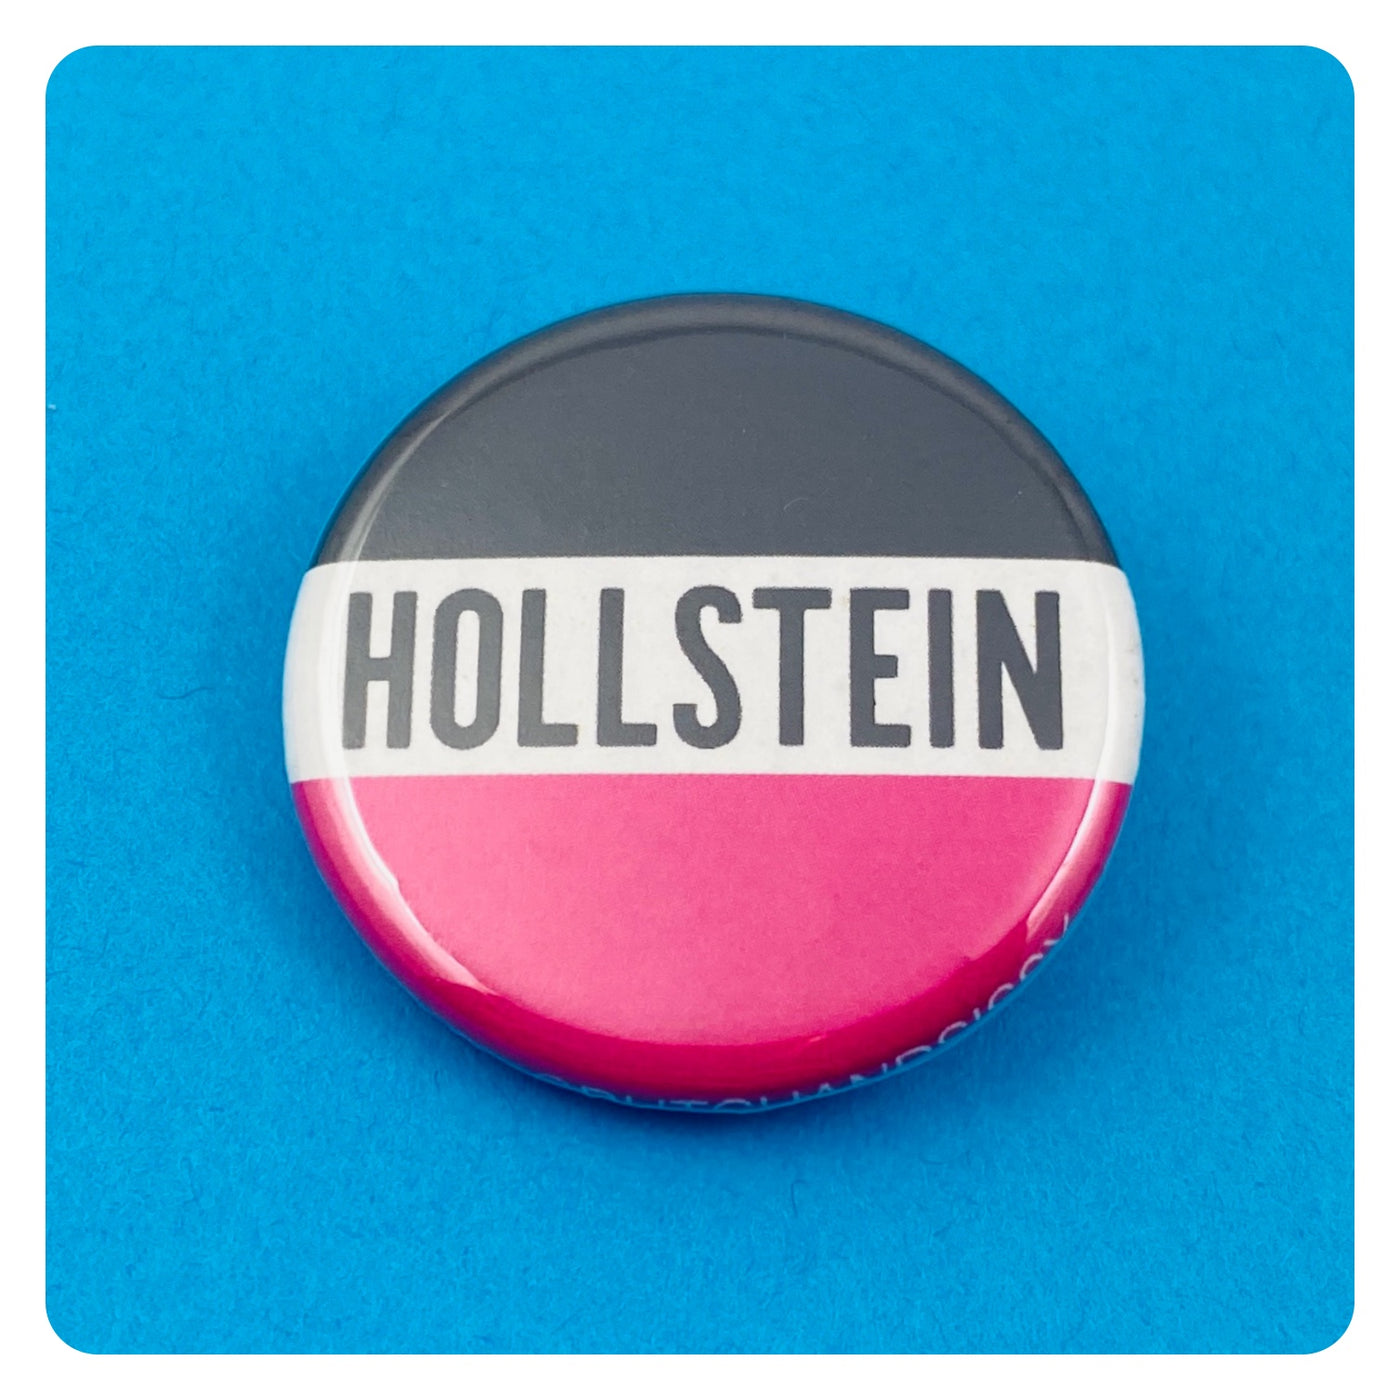 Hollstein Ship Button